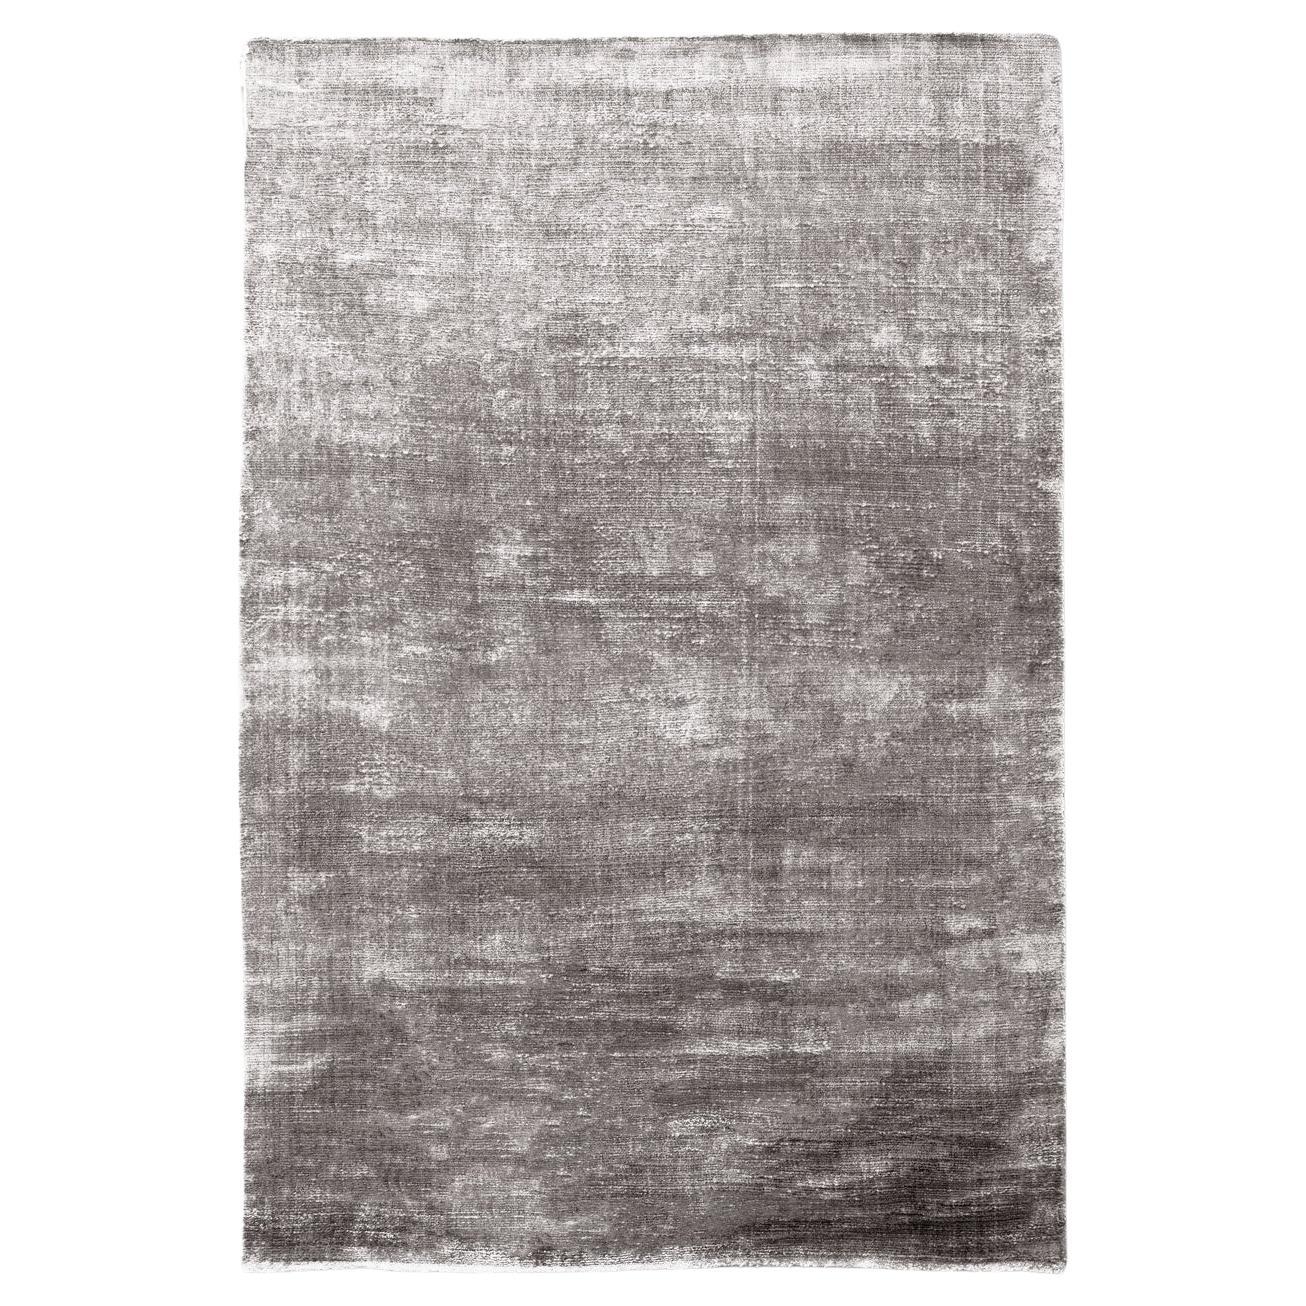 21st Century Shiny Velvetly Earthly Tones Rug by Deanna Comellini 200x300 cm